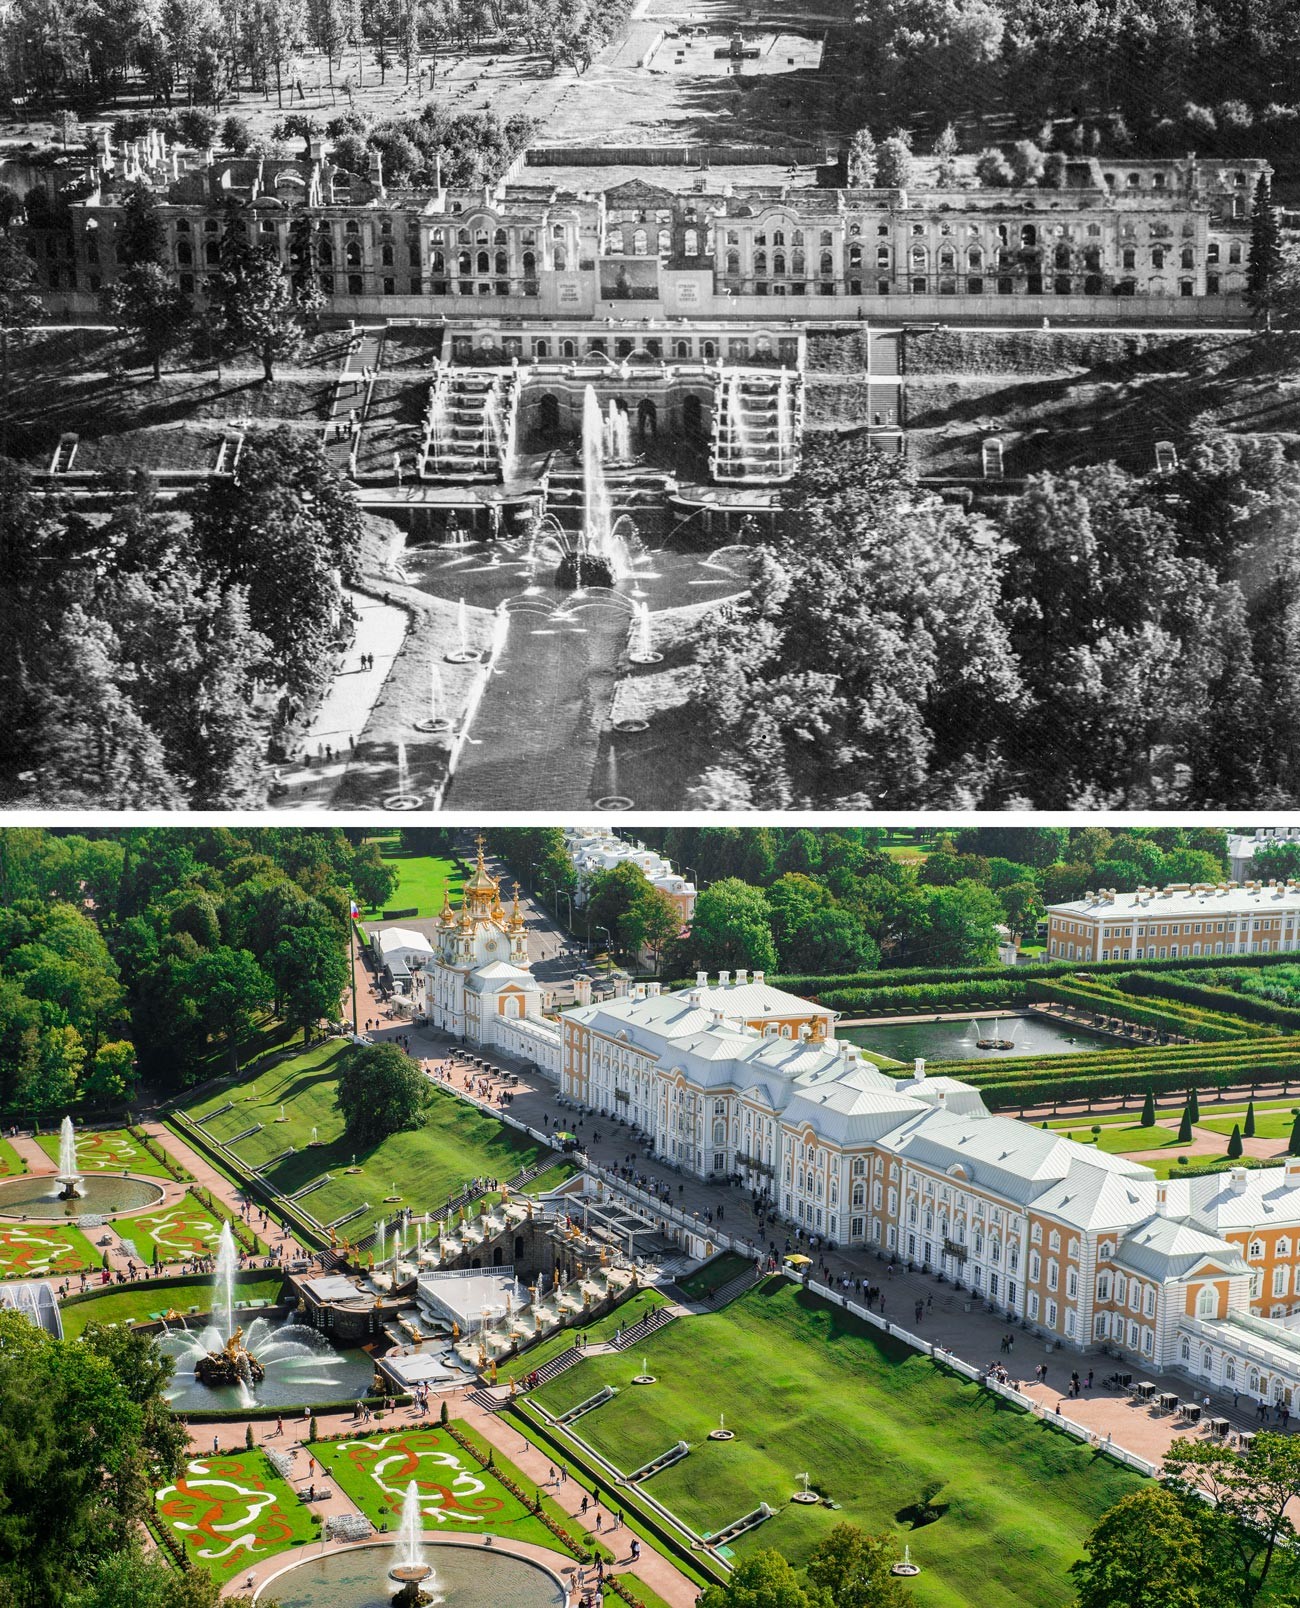 上公園、大宮殿、大滝噴水の眺め。1944年と現在